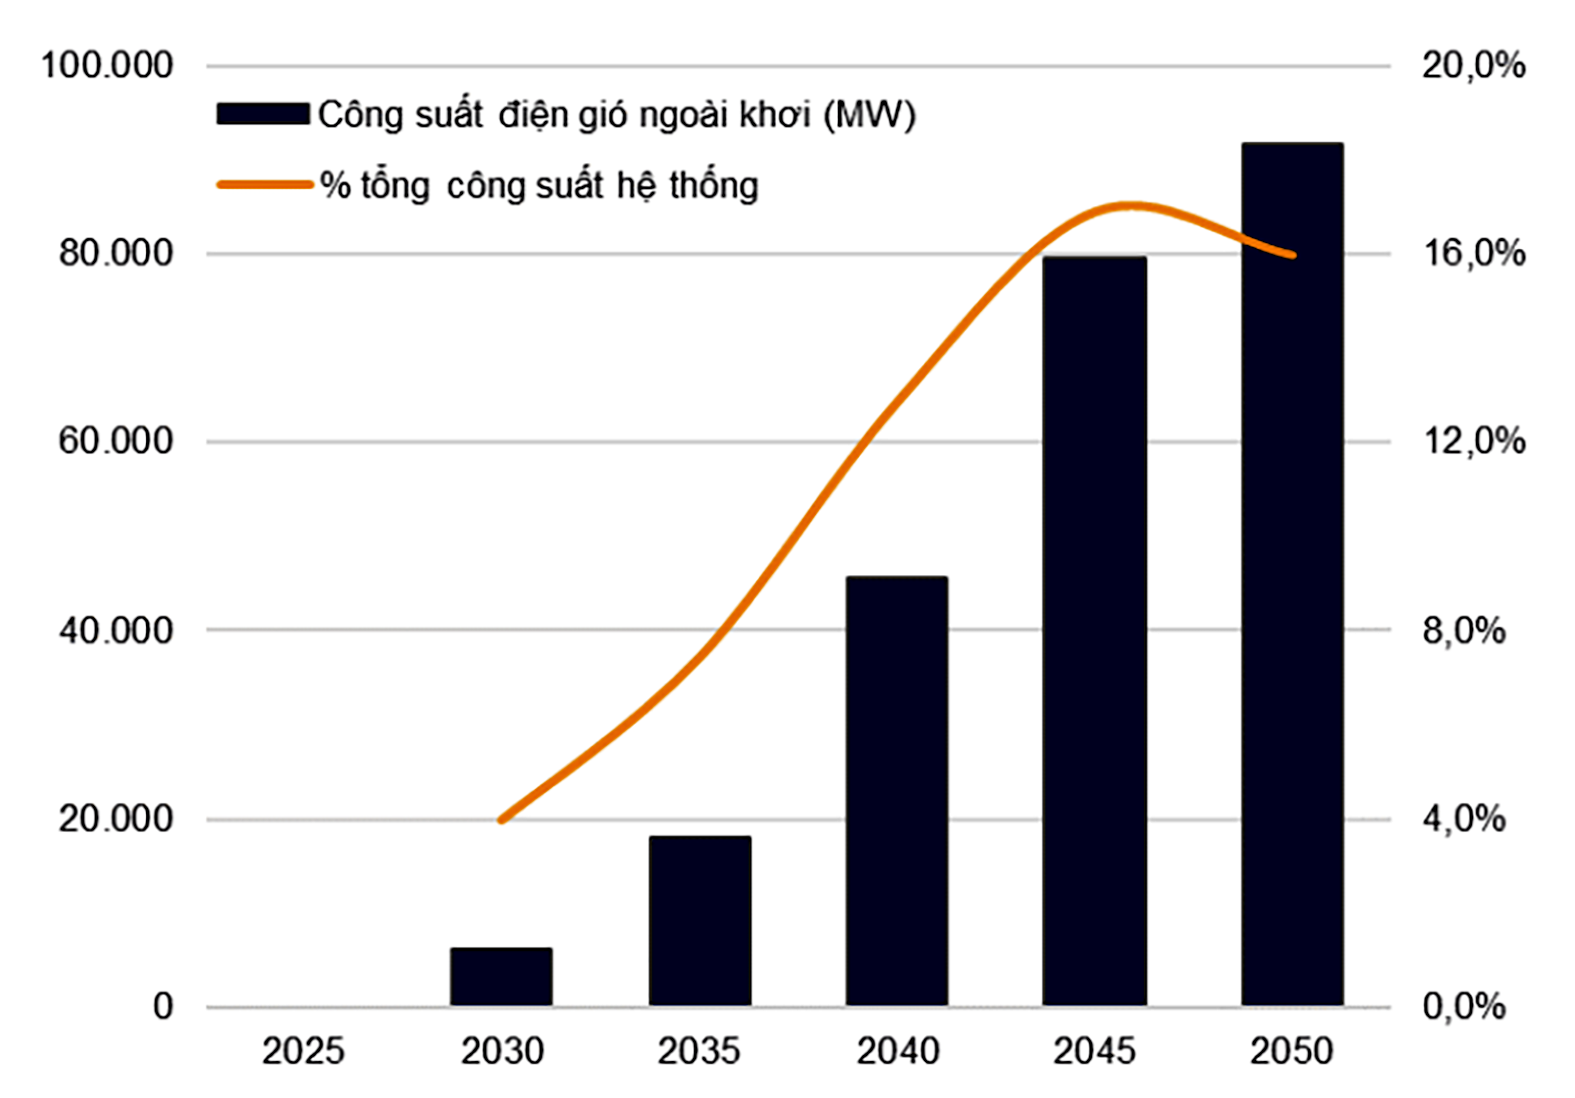  Công suất điện gió ngoài khơi sẽ tăng mạnh trong giai đoạn 2030-50, đóng góp 16% tổng công suất hệ thống vào năm 2050. Nguồn: QHĐ8, VnDirect